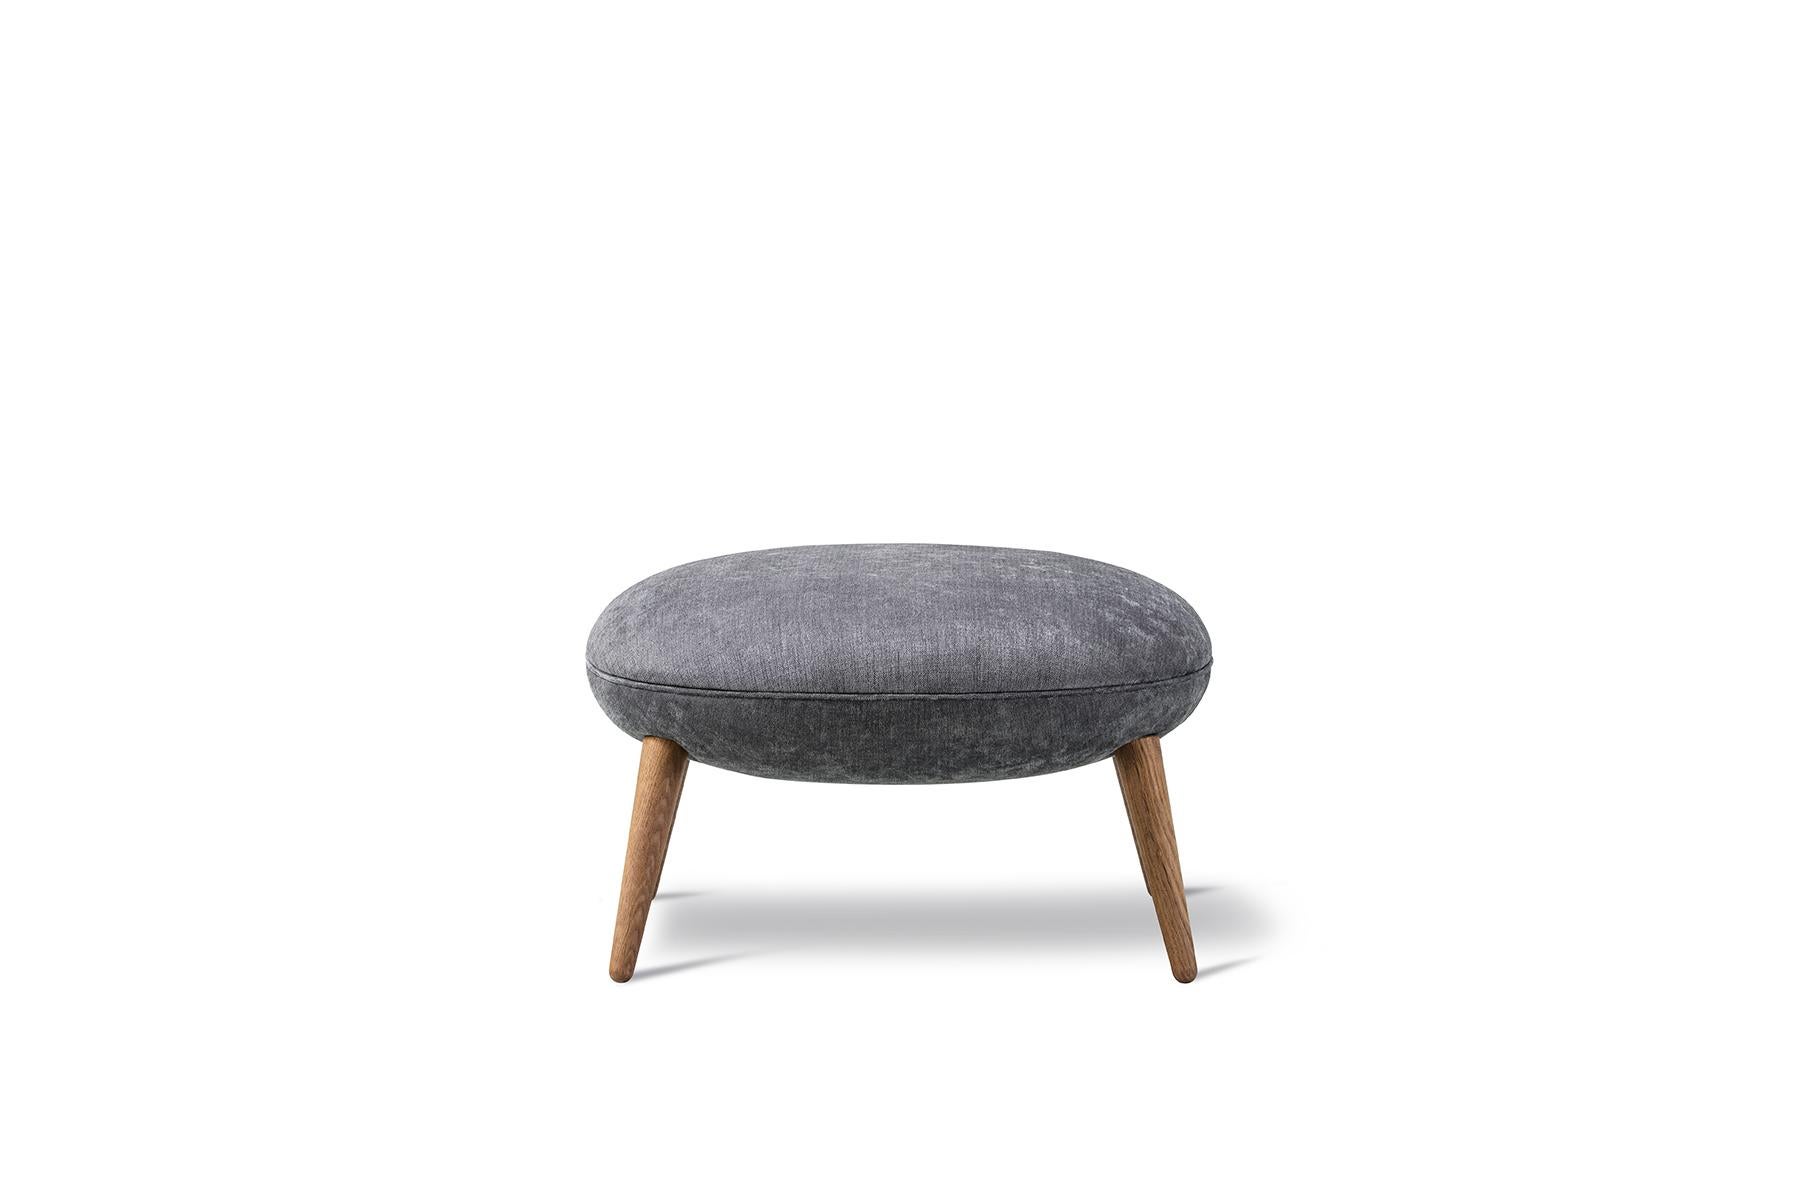 Le pouf swoon de Space Copenhagen complète le fauteuil swoon, créant ainsi un ensemble de salon sophistiqué qui invite à des heures de confort.